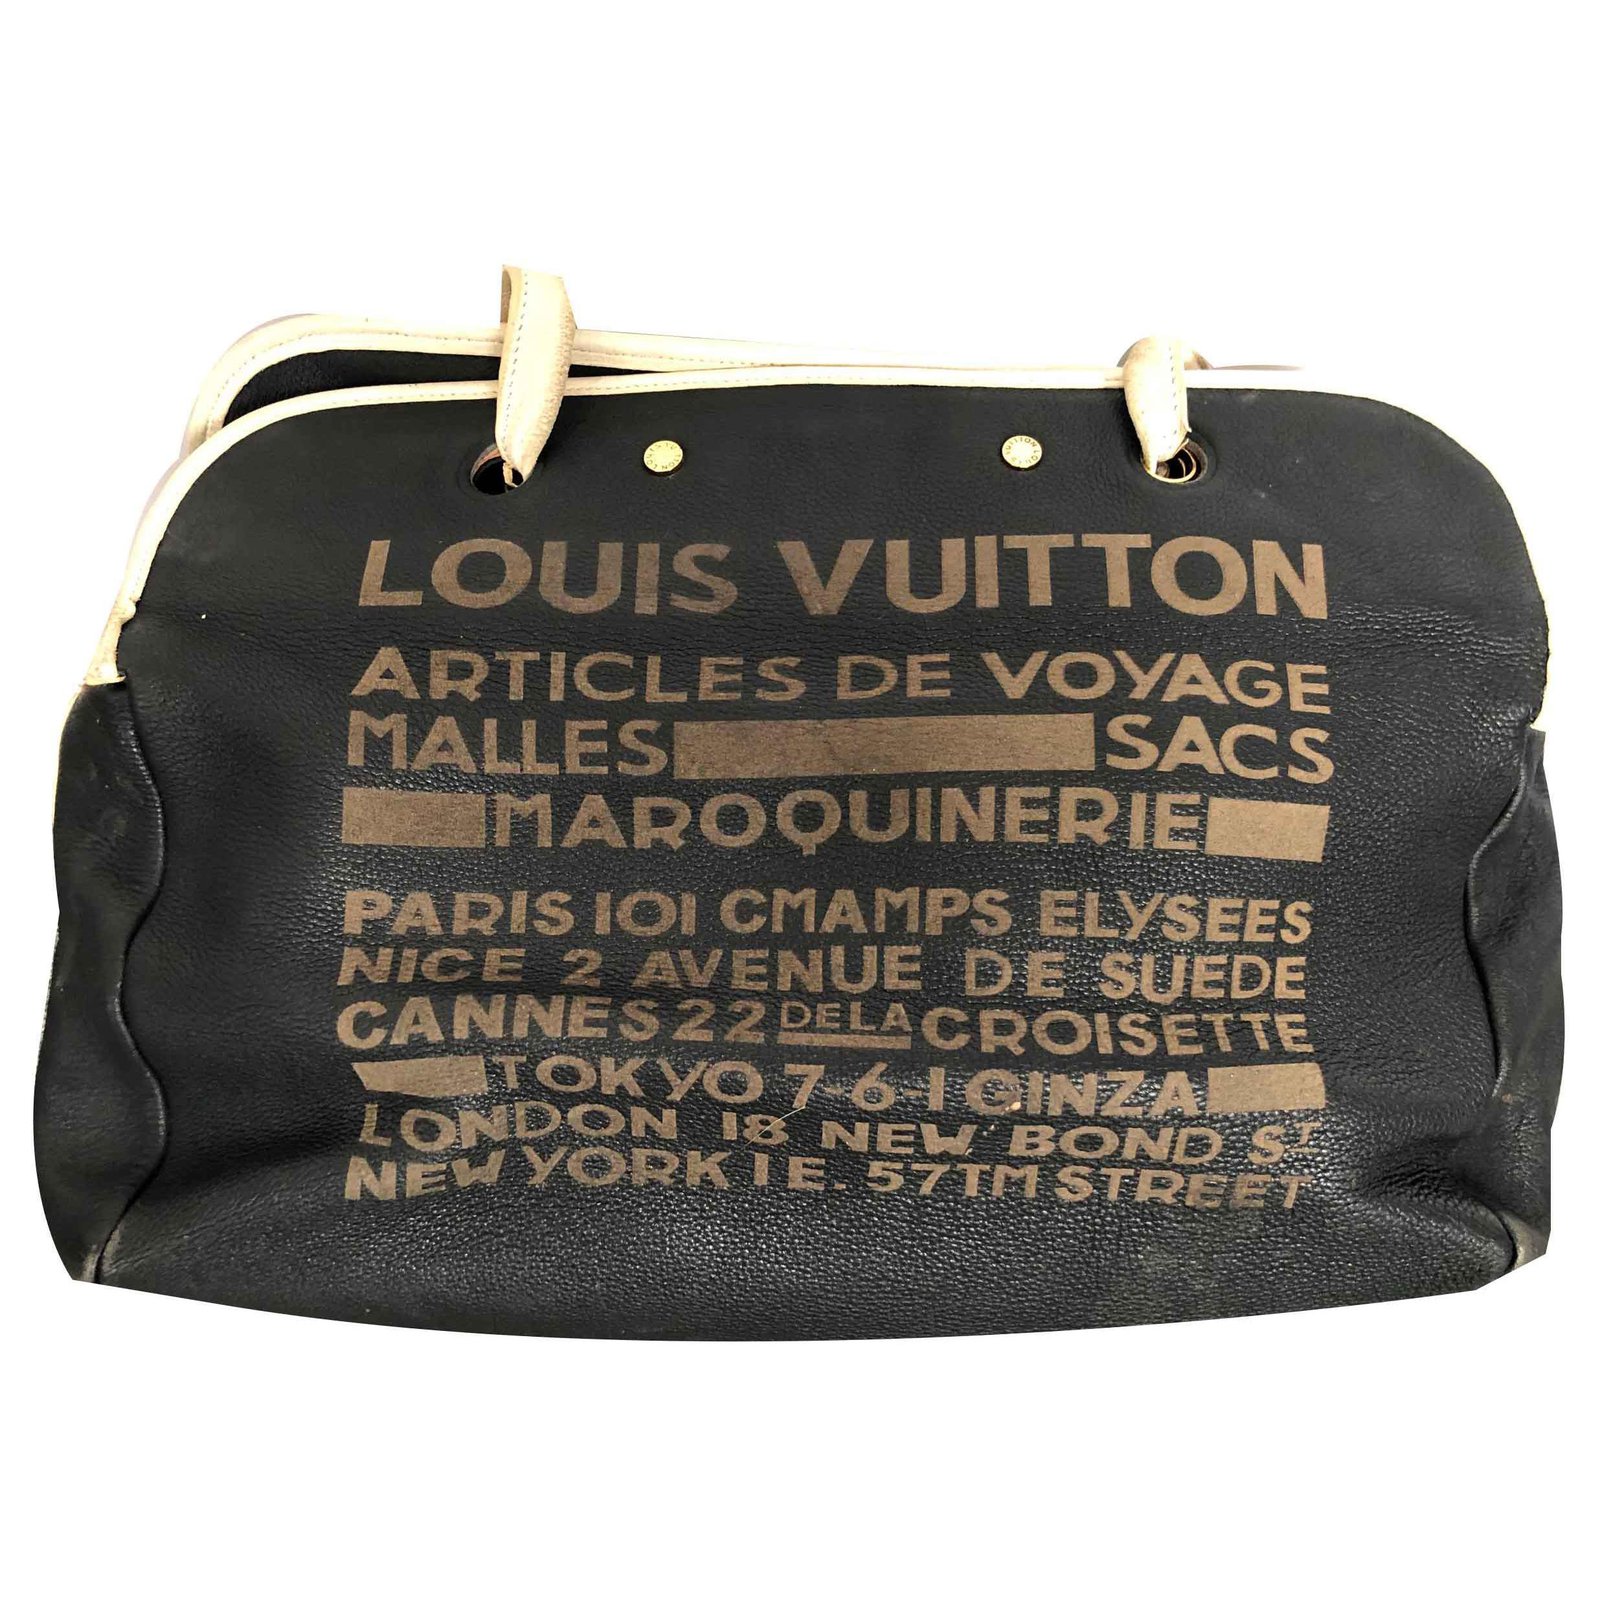 Louis Vuitton, Bags, Louis Vuitton Articles De Voyage